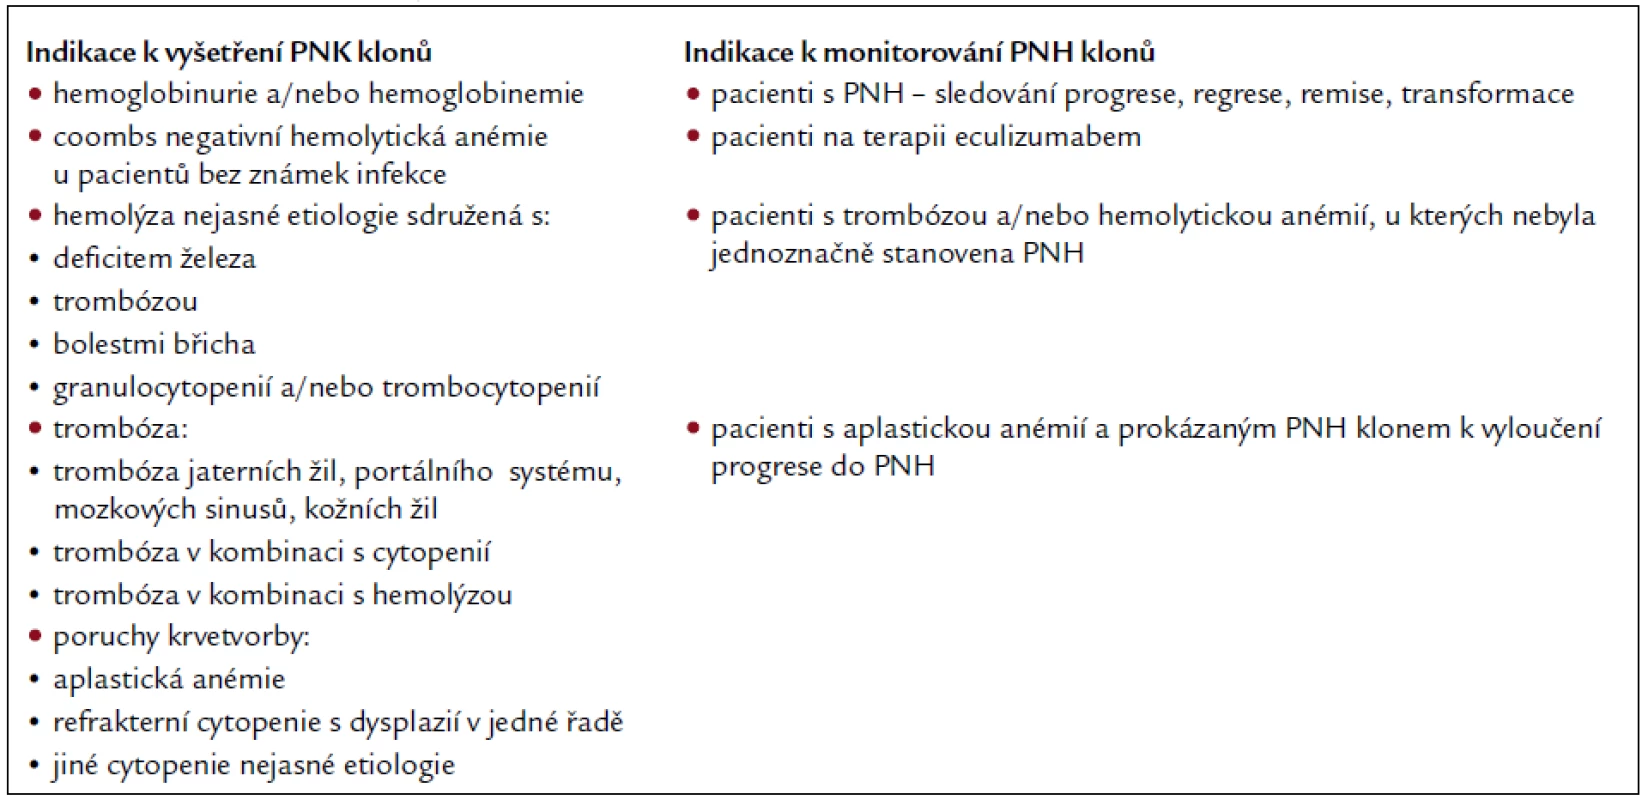 Klinické indikace k vyšetření PNH klonů.